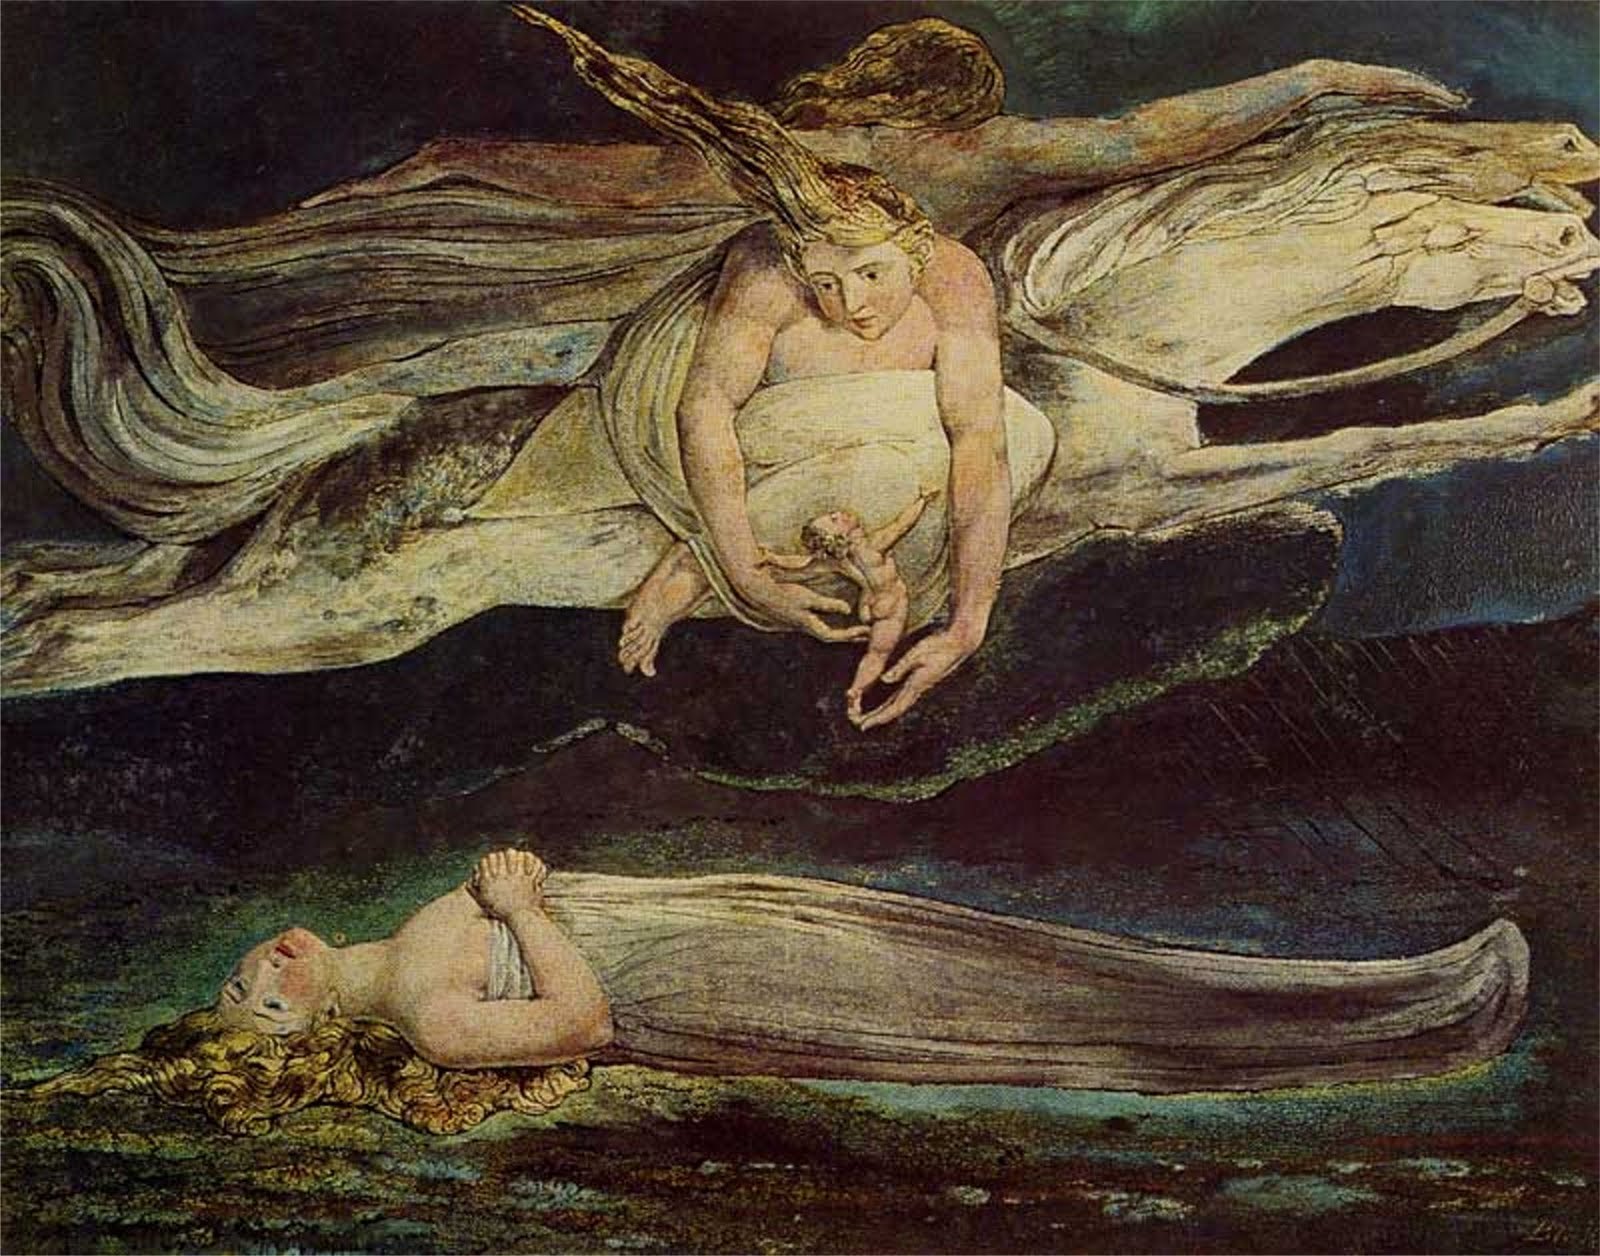 聖殤 by William Blake - 1795 - - 